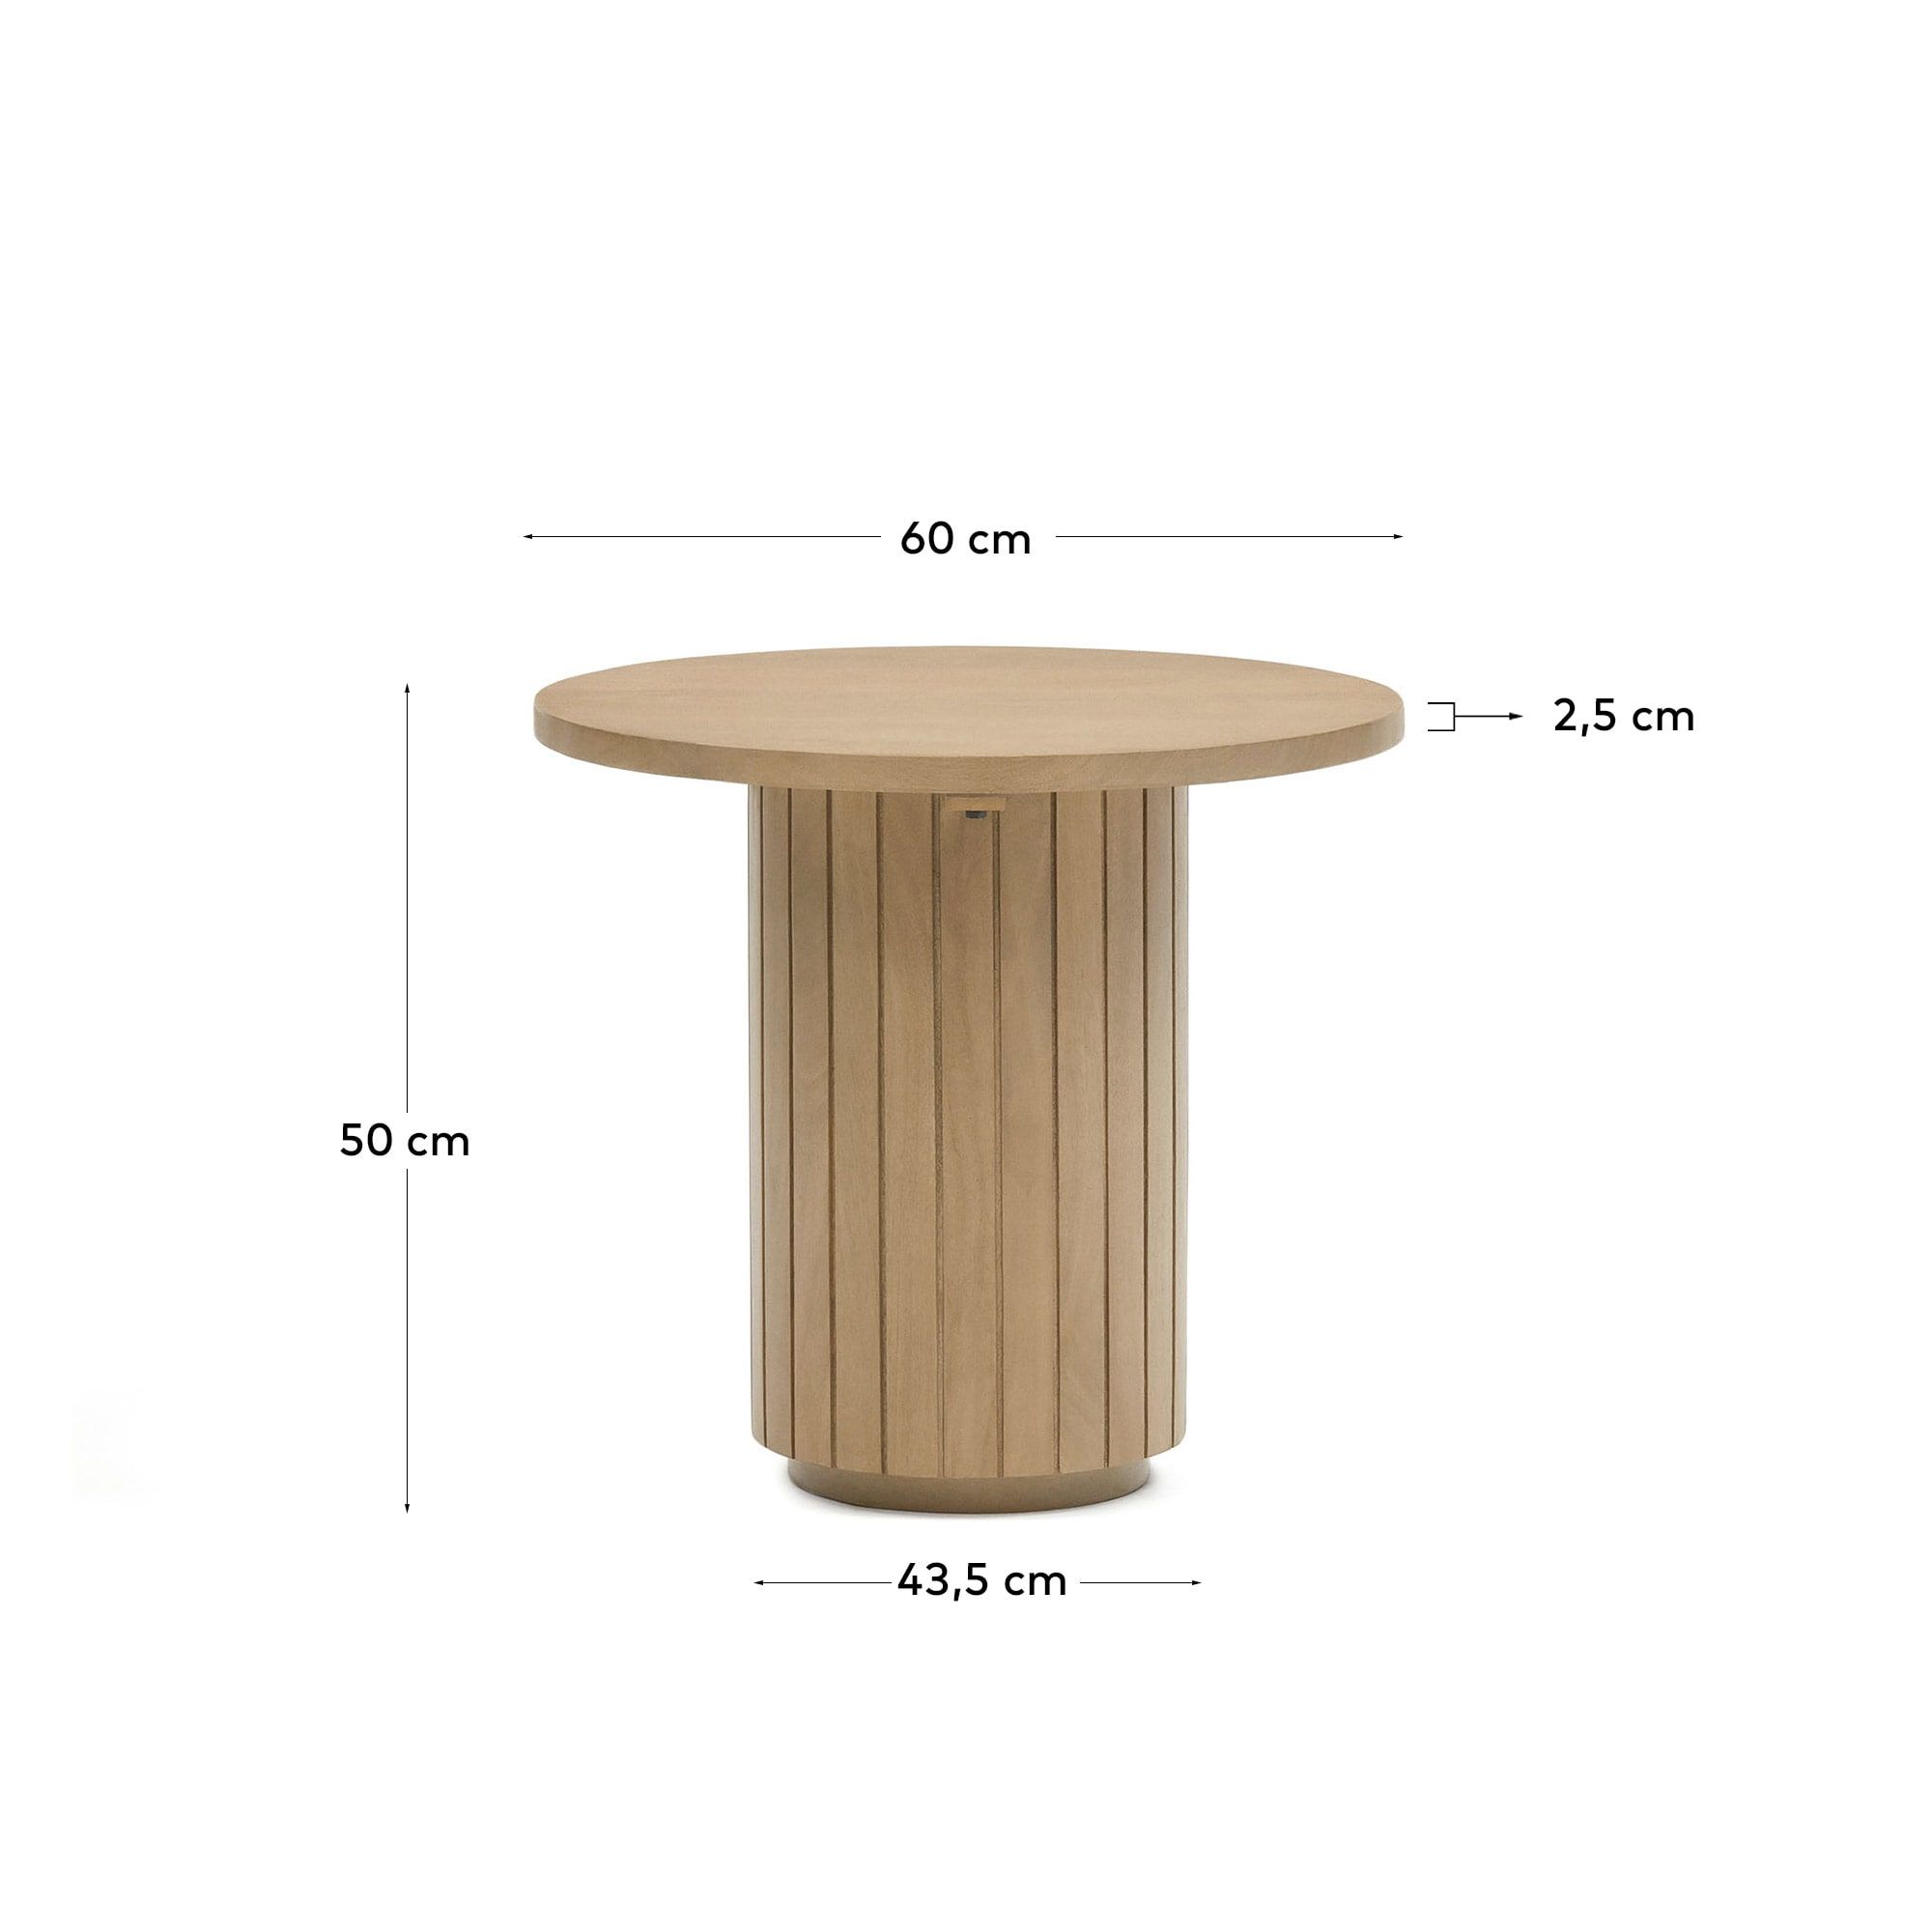 Licia Круглый столик из массива дерева манго Ø 60 см Licia